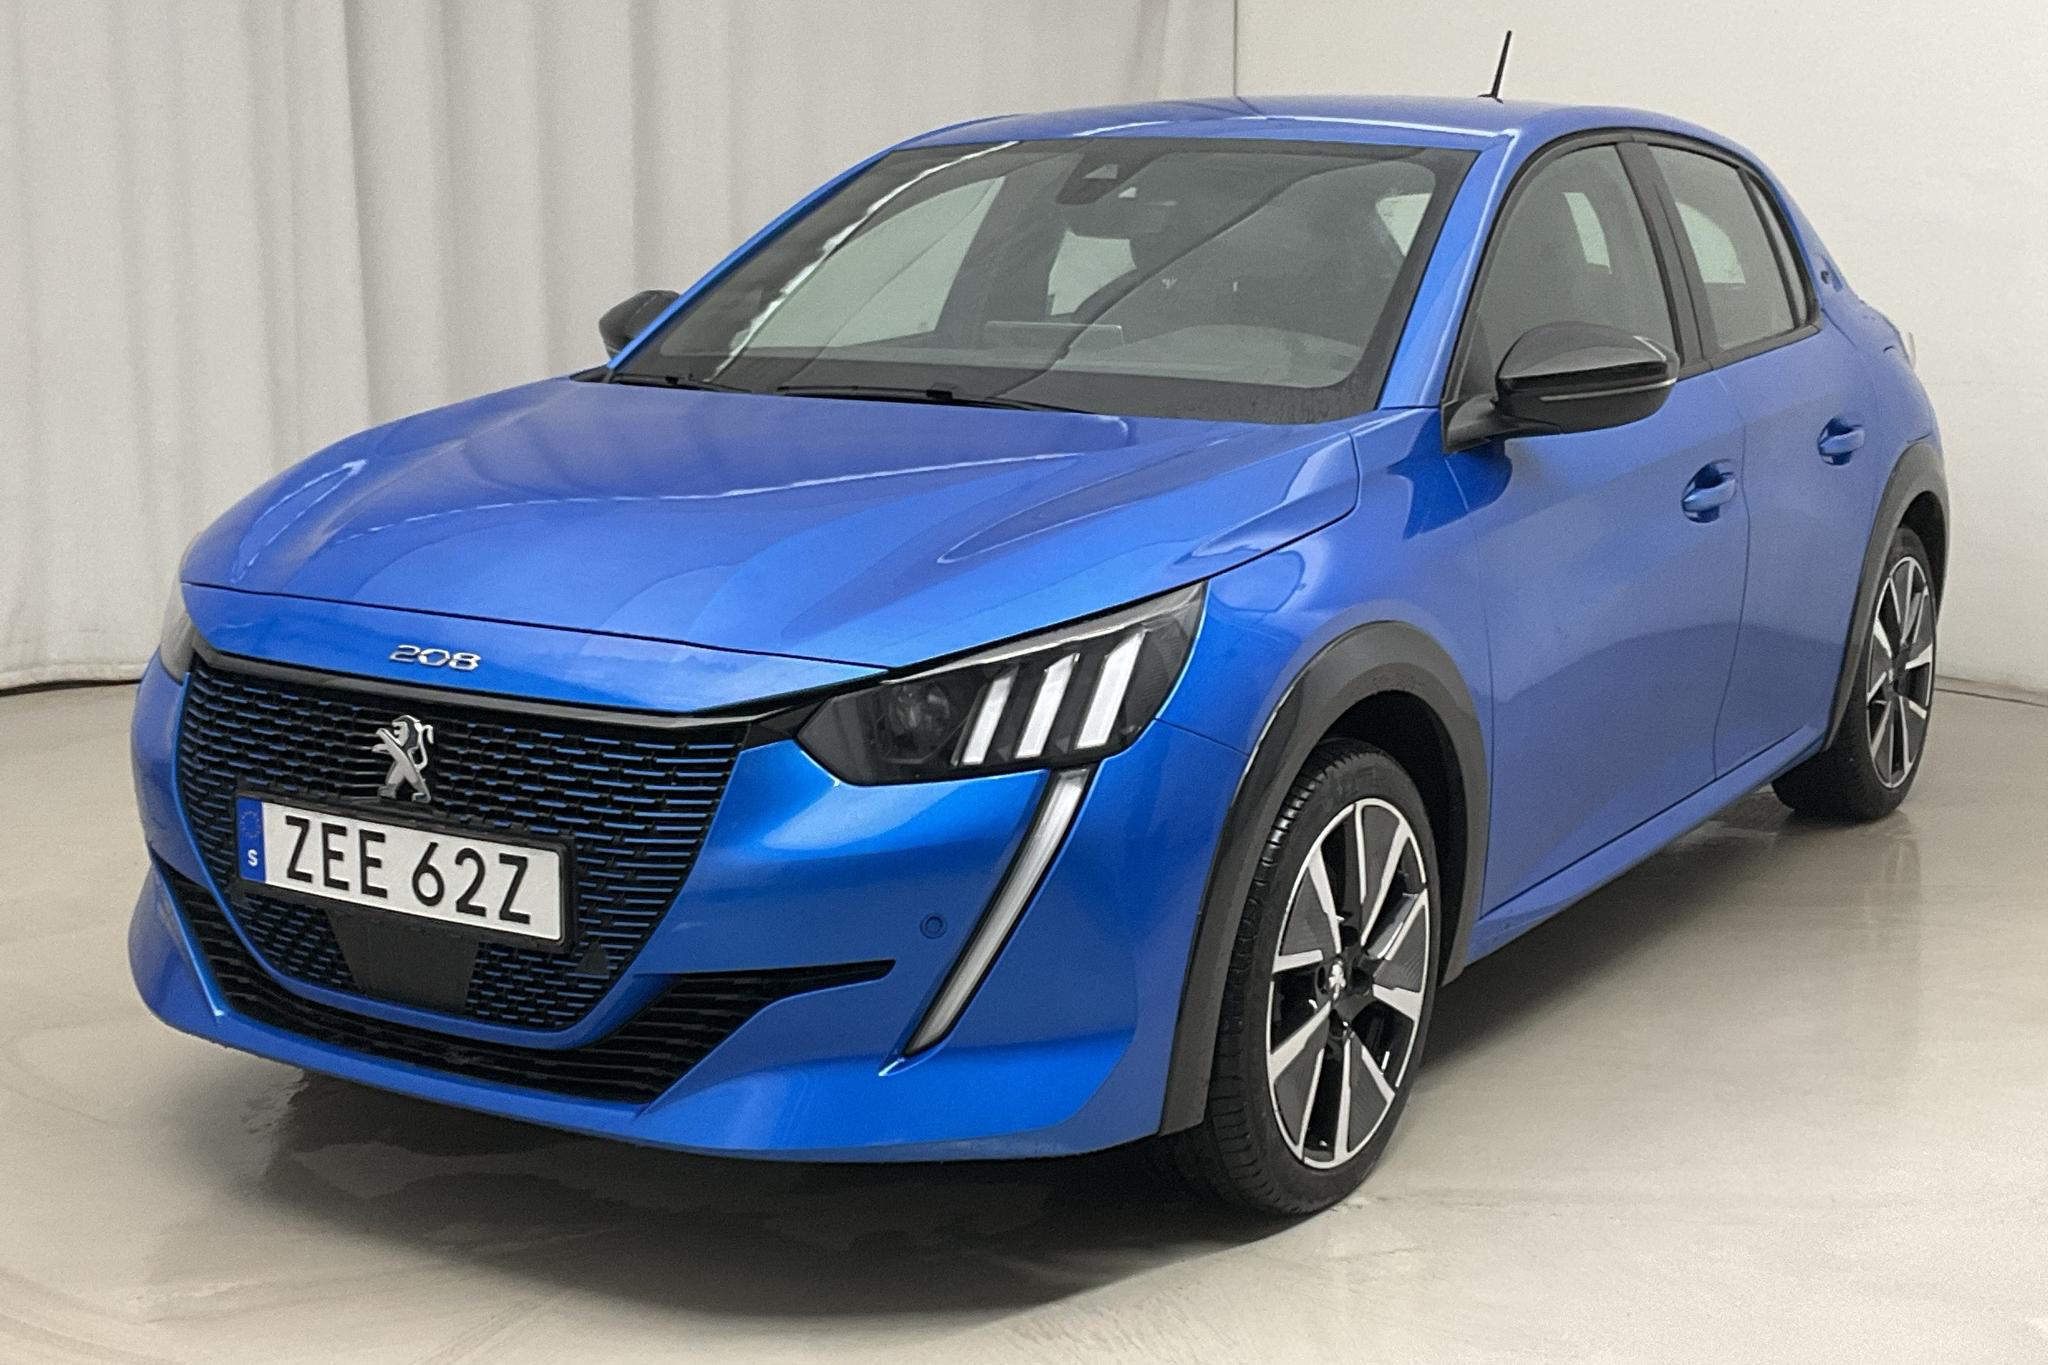 Peugeot e-208 50 kWh 5dr (136hk) - 32 010 km - Automatyczna - niebieski - 2020